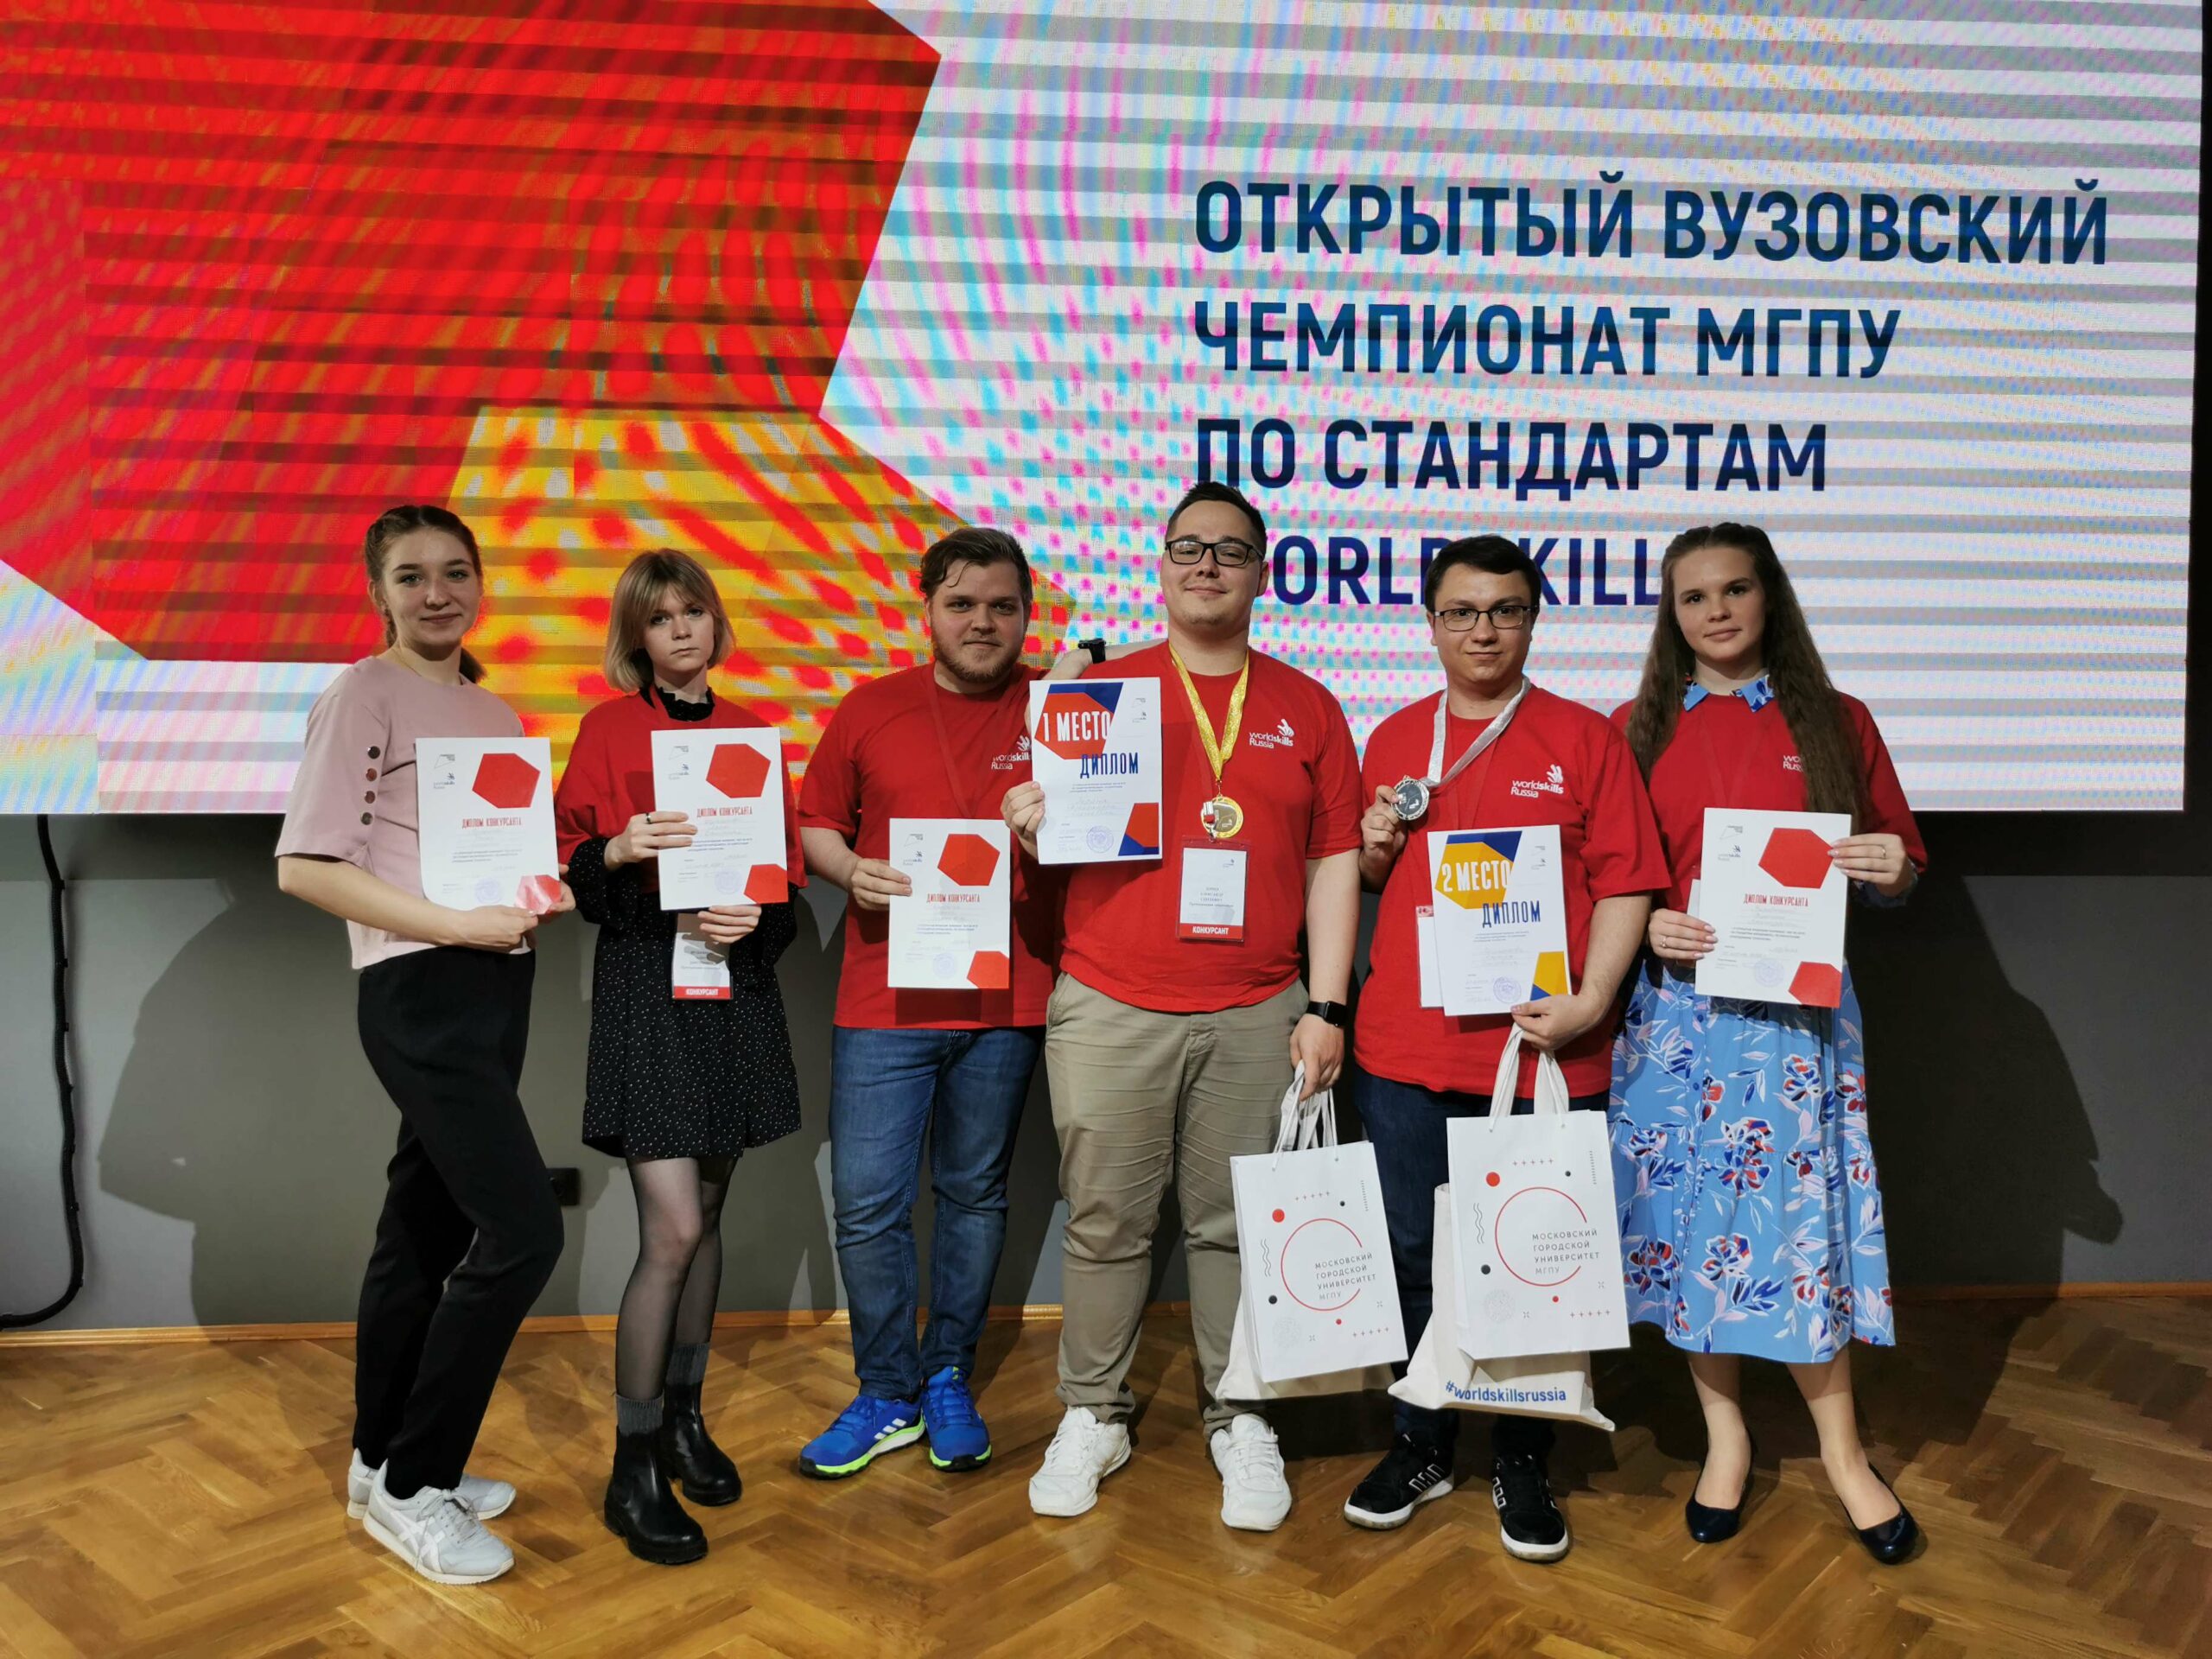 Студенты ИЦО одержали победу в вузовском чемпионате по стандартам Worldskills